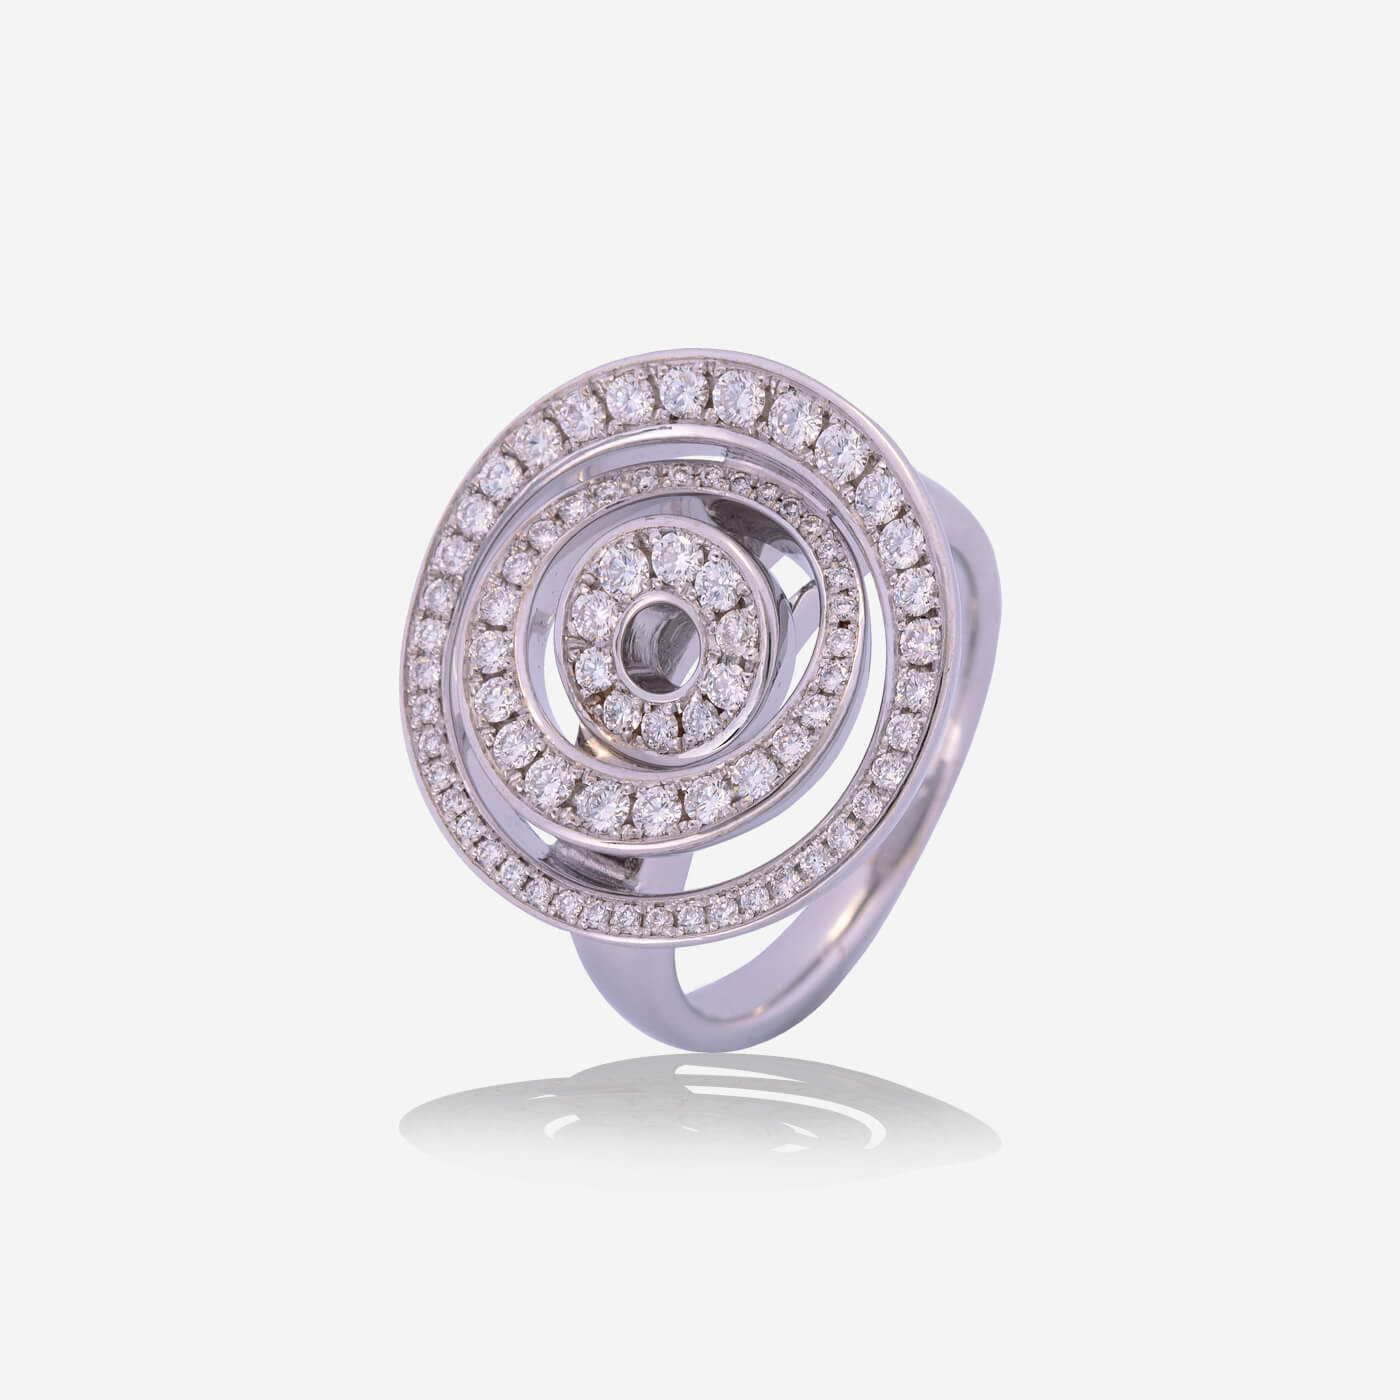 White Gold Swirl With Diamonds Ring - Ref: RY06570